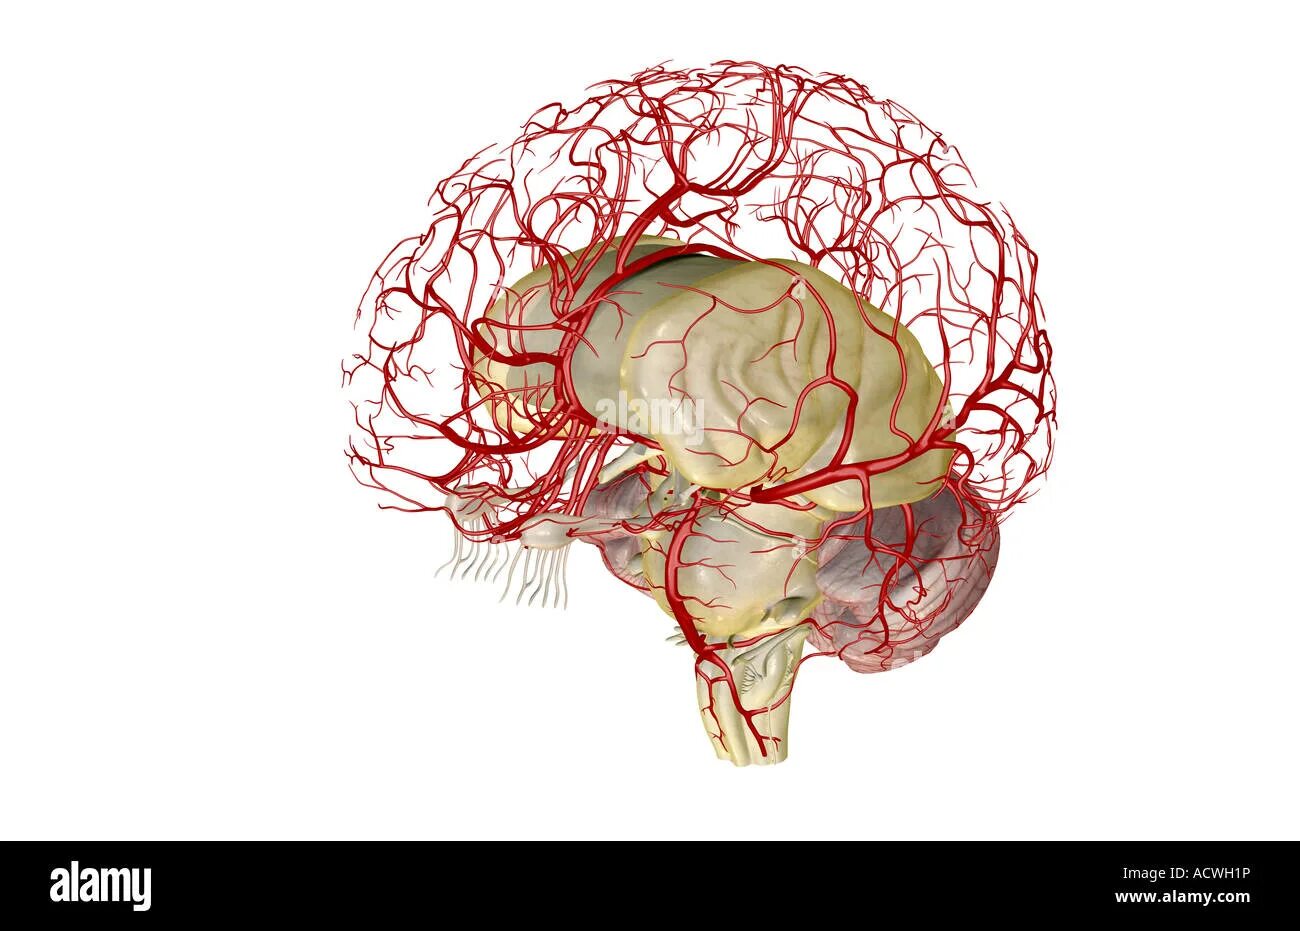 Нервные сосуды головного мозга. Кровоснабжение коры головного мозга. Кровеносные сосуды мозга. Капилляры головного мозга. Строение сосудов мозга.